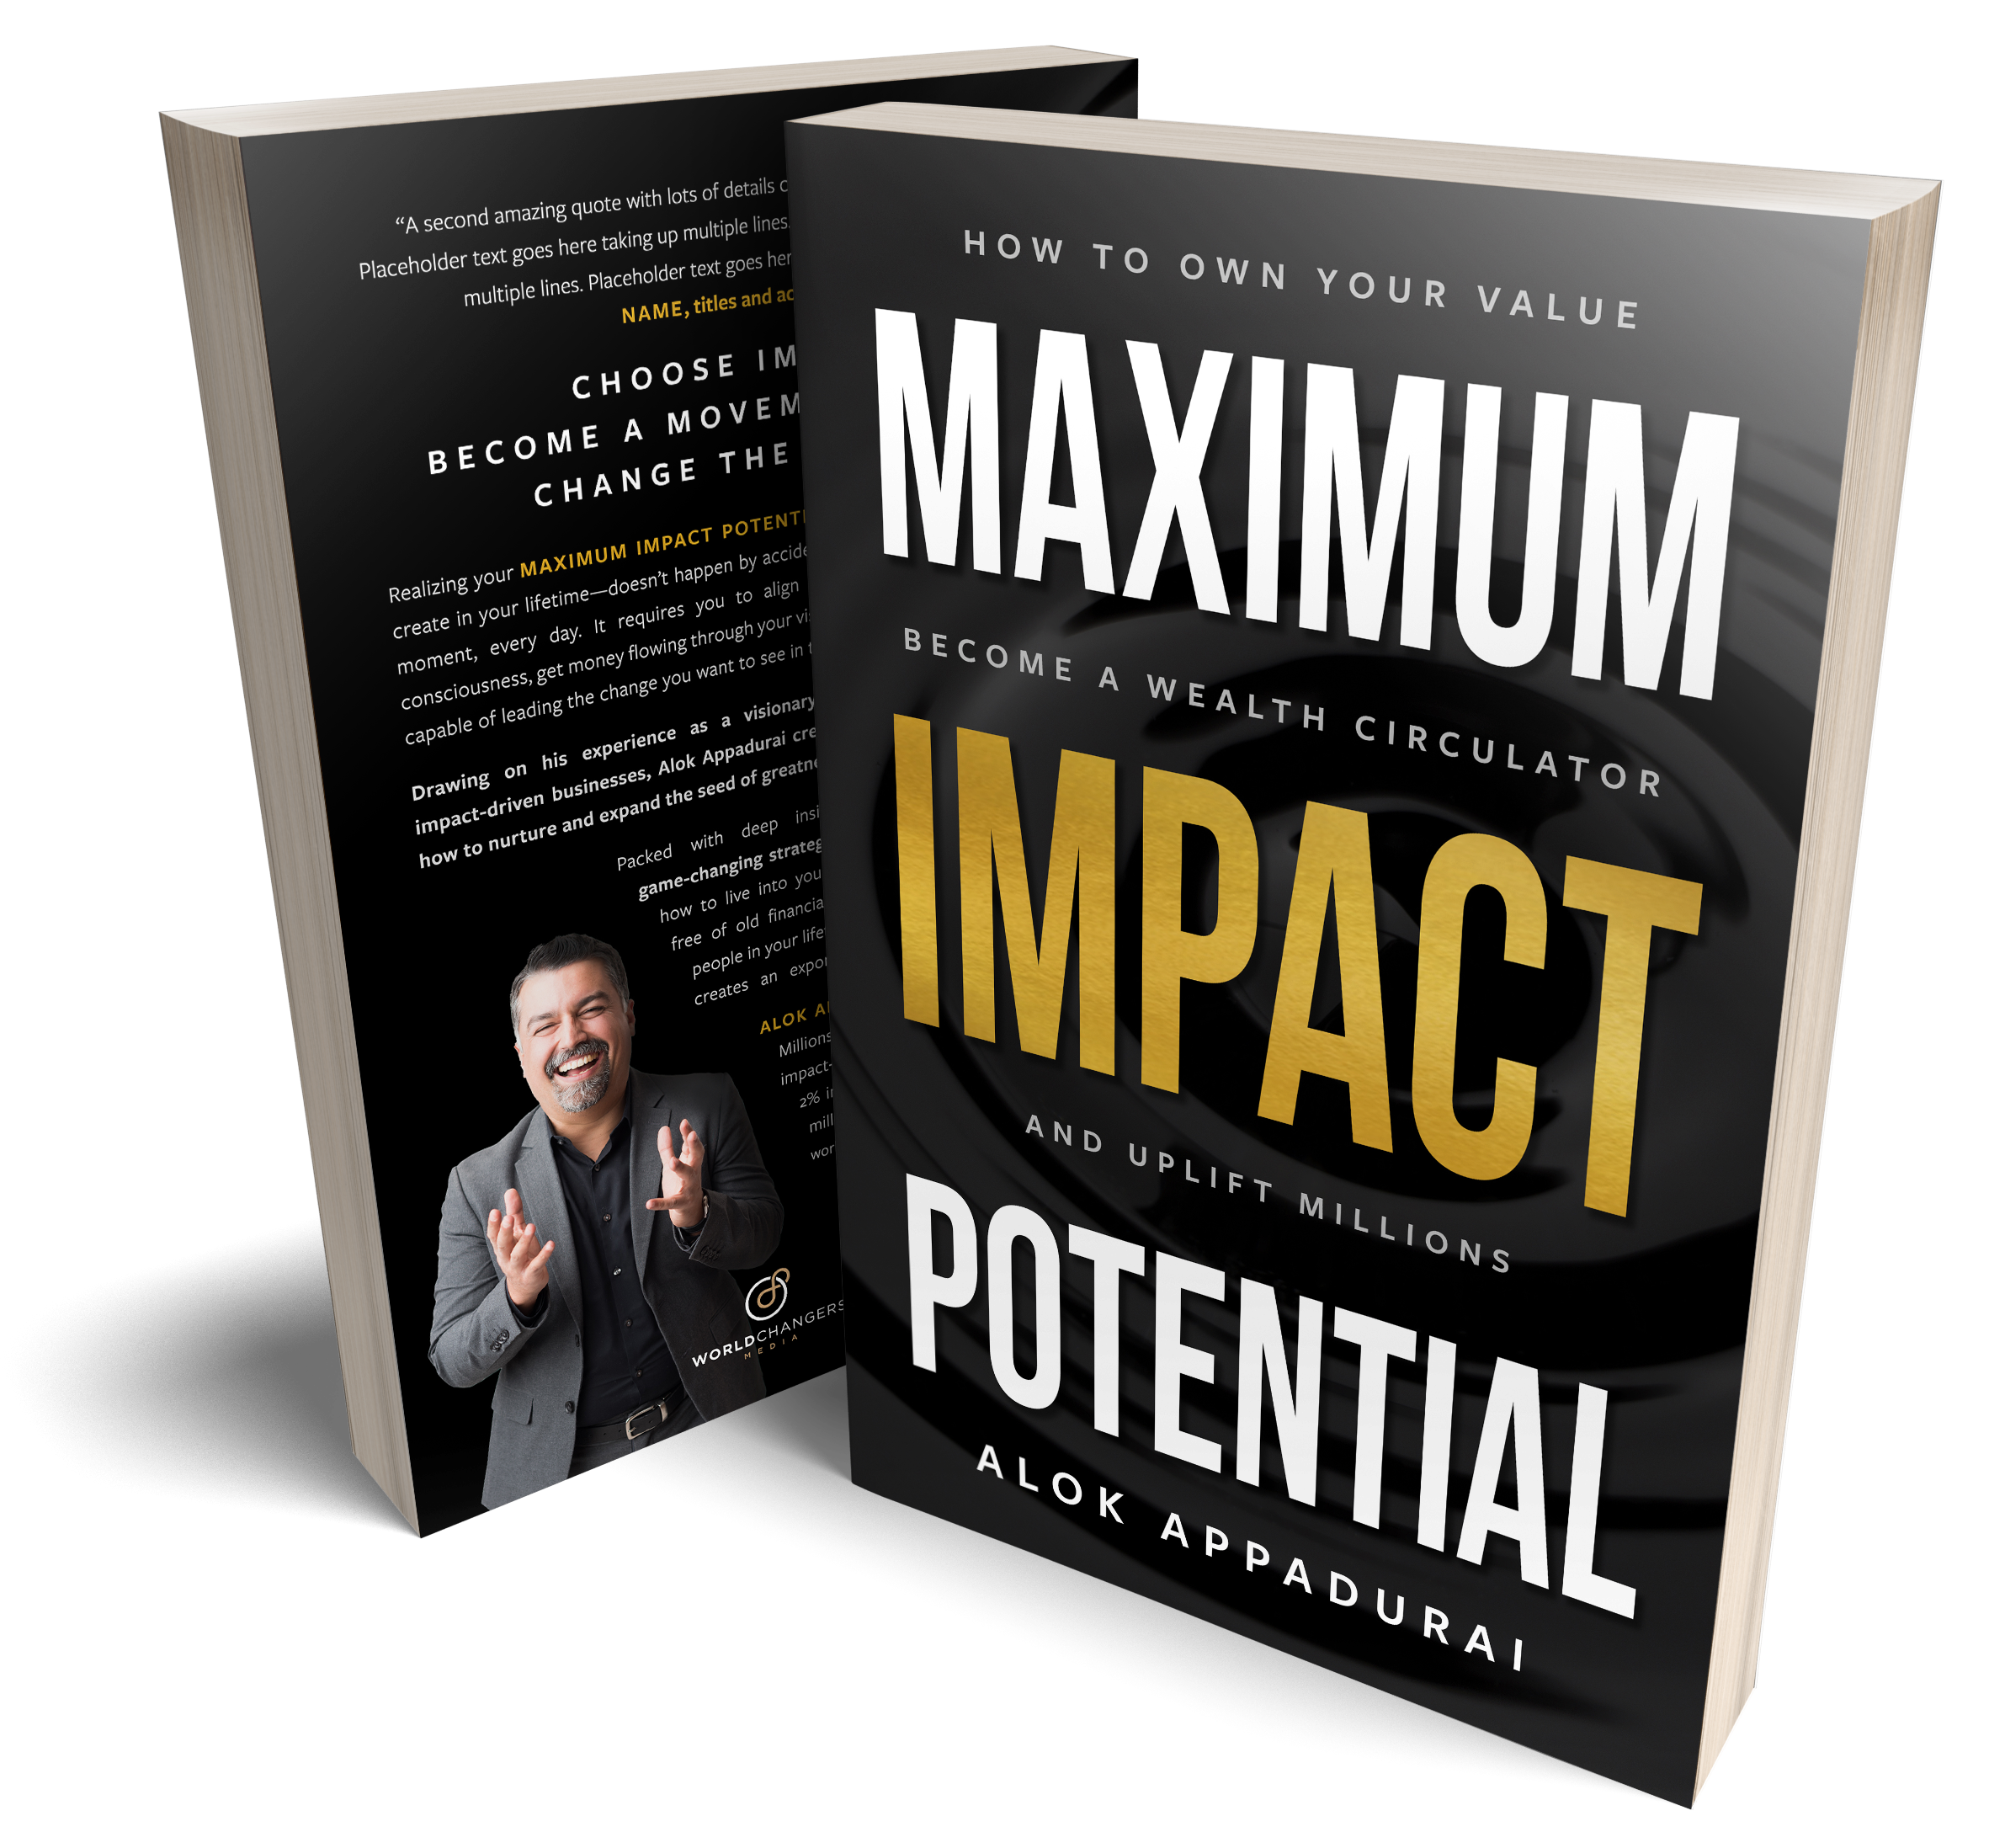 Book: Maximum Impact Potential